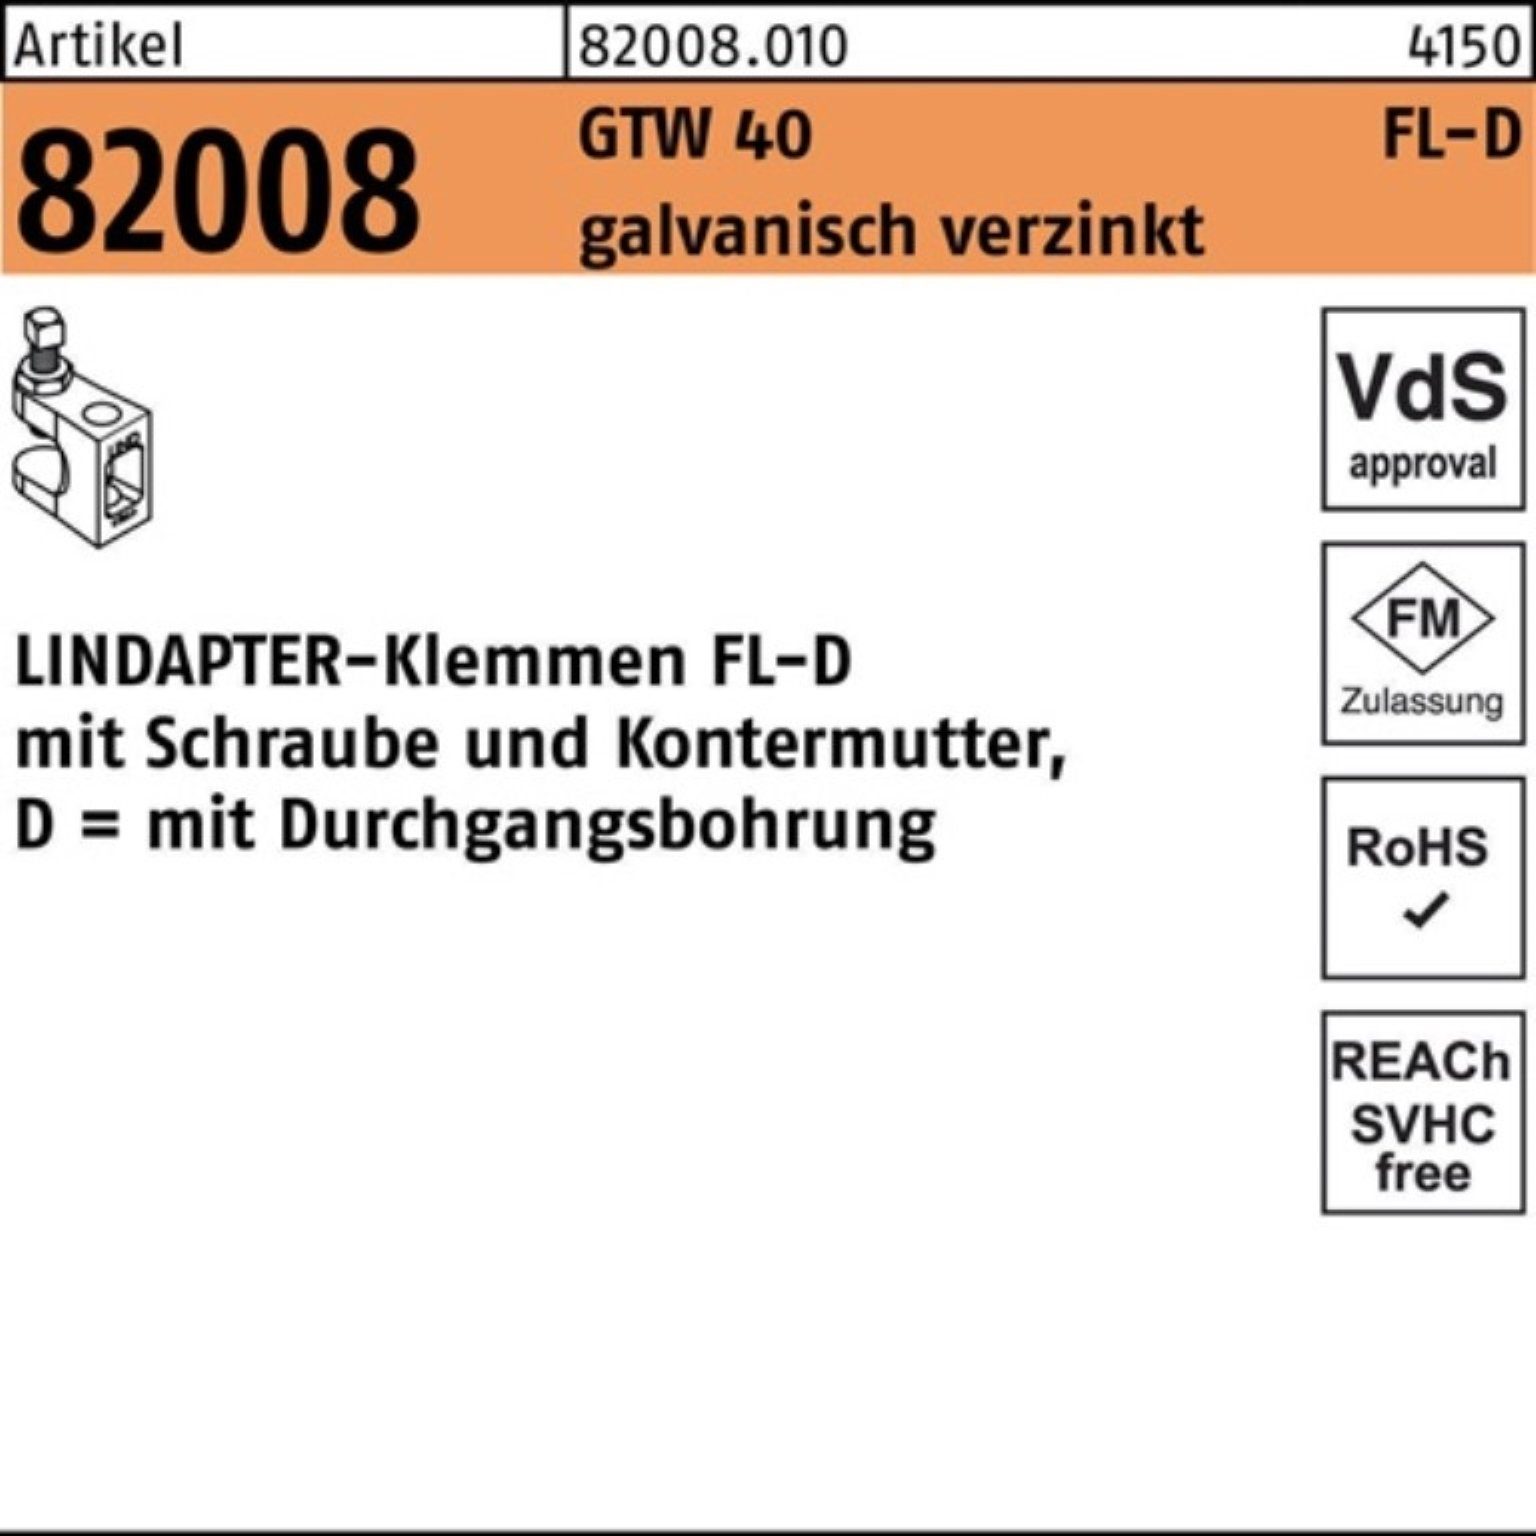 Lindapter Klemmen Pack 2 galv.verz. R 40 FL-D GTW FL 82008 Stück Klemmen 100er - D 1 11